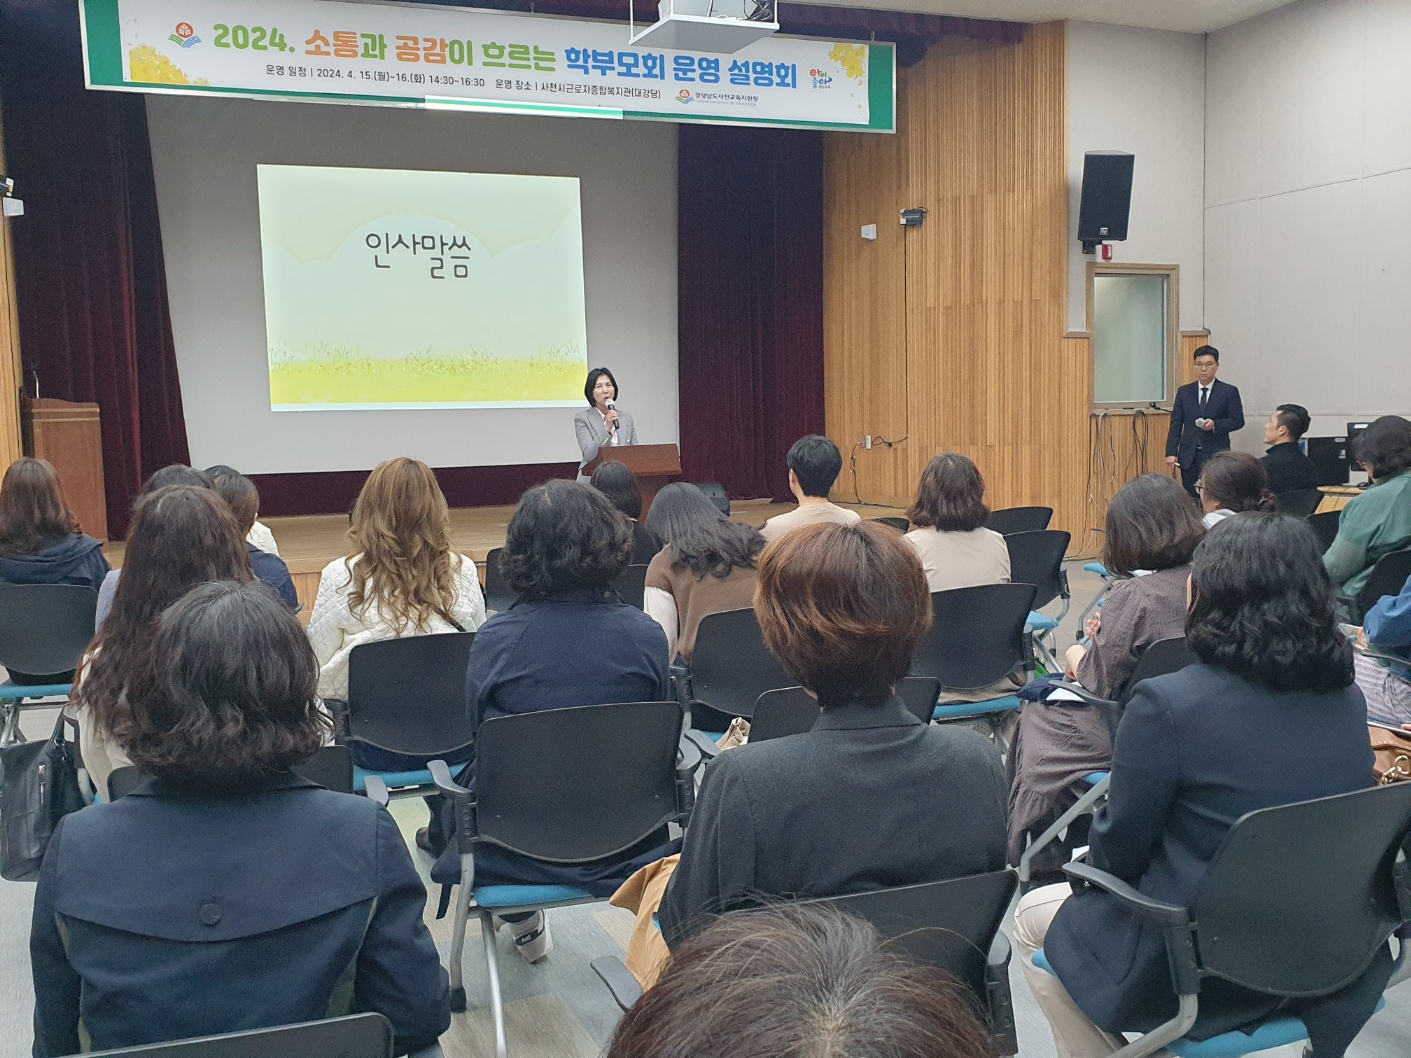 
															
															
																
																	사천교육지원청, 2024년 학부모회 운영 설명회 개최 [1번째 이미지]
																
																
															
														